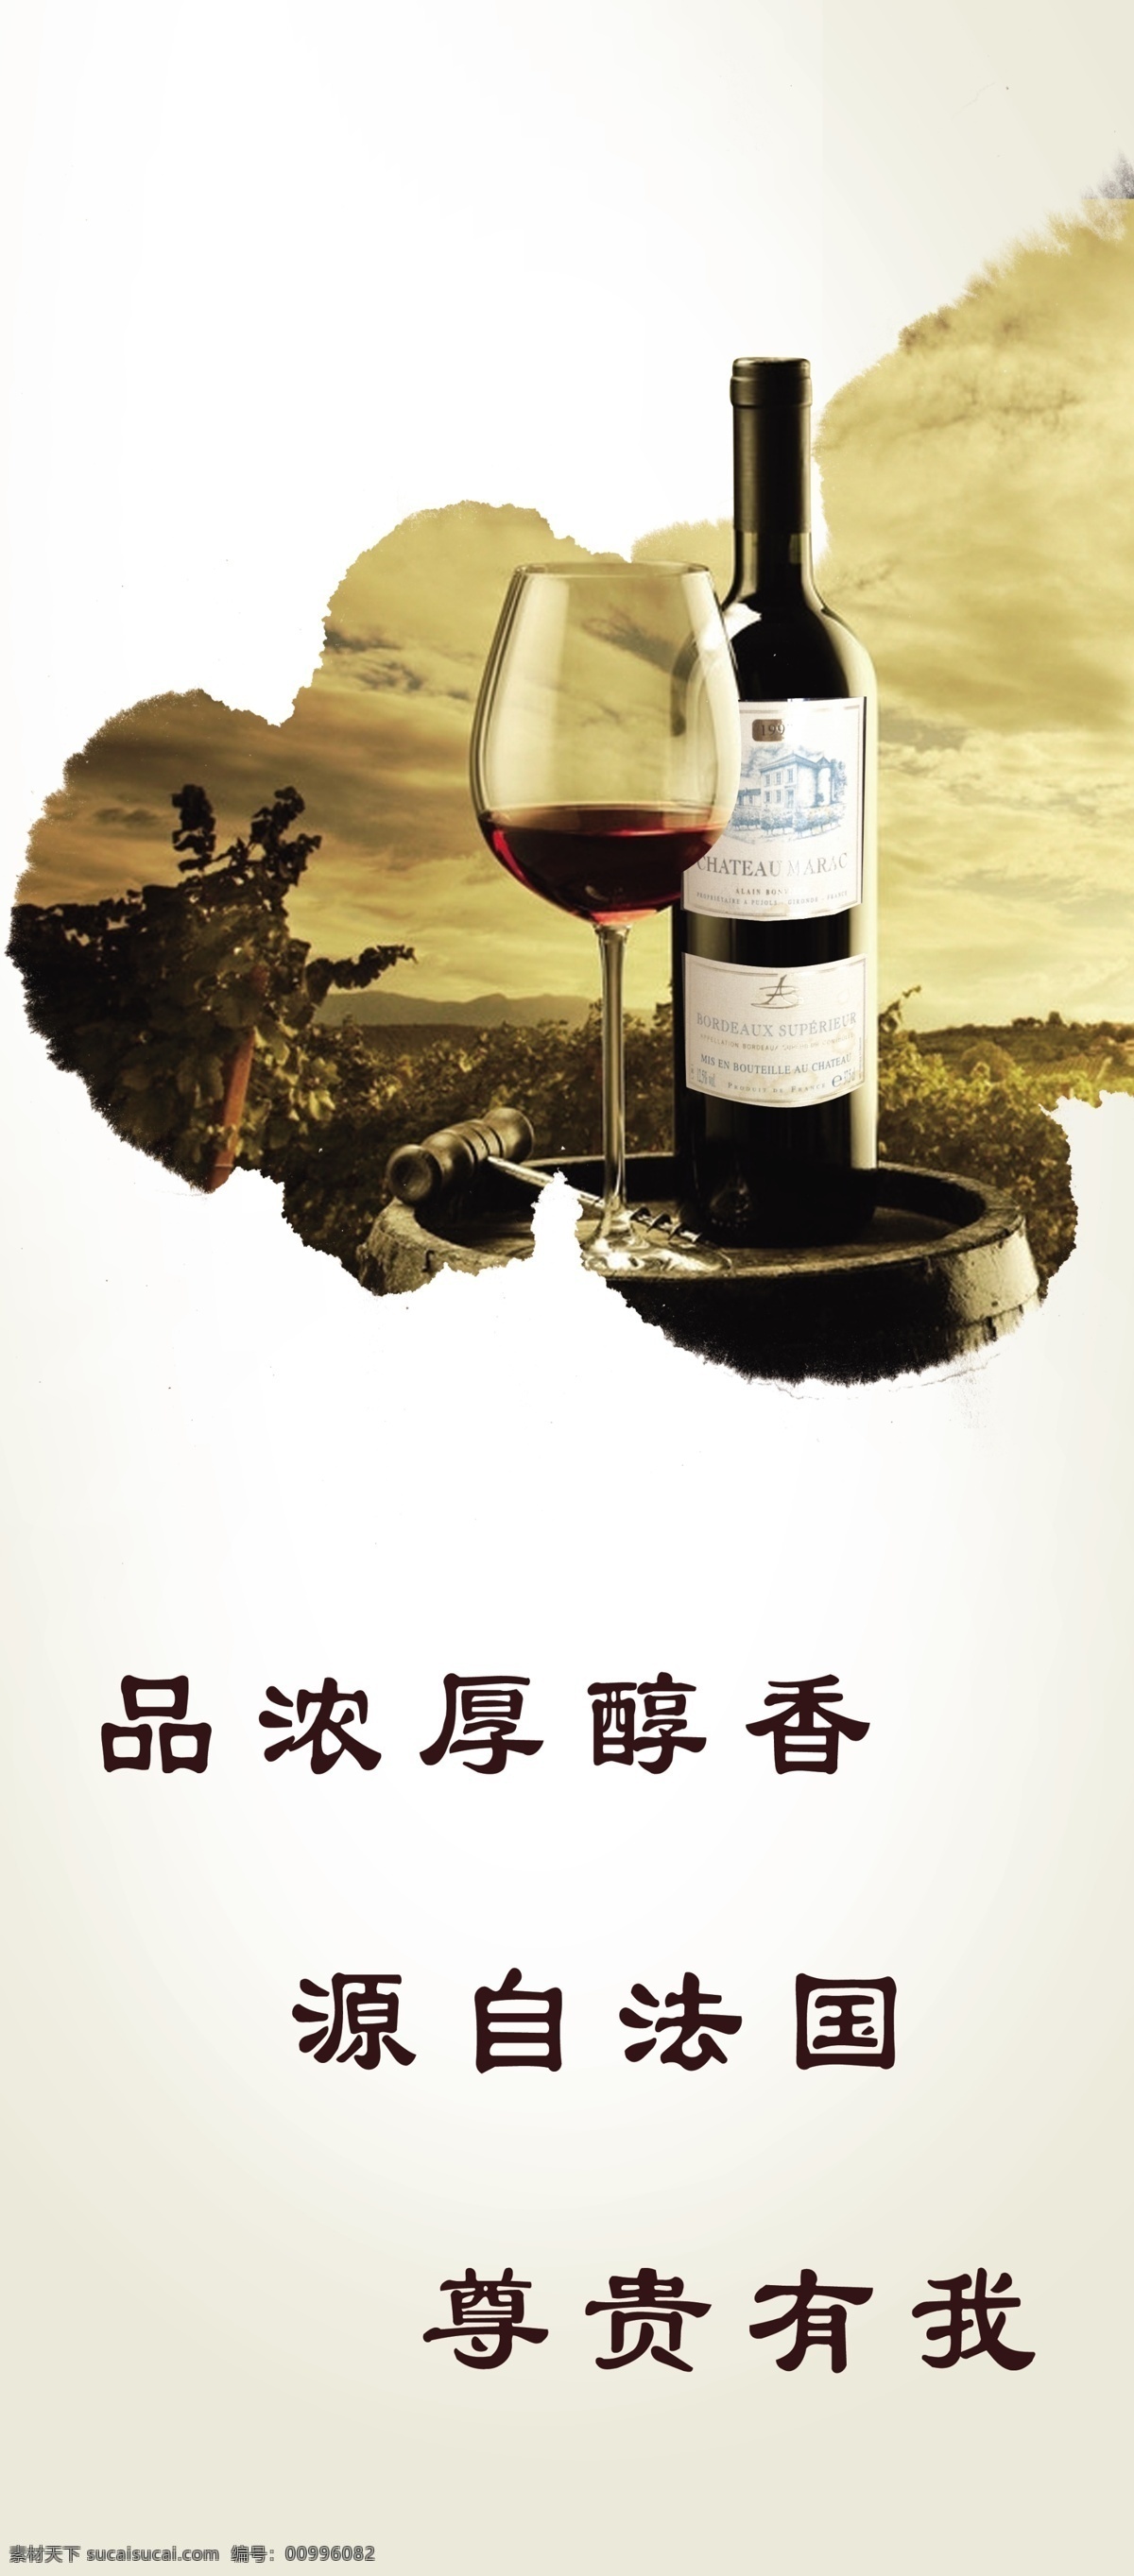 红酒展架 法国葡萄酒 展架 易拉宝 画册 广告宣传 画册设计 白色